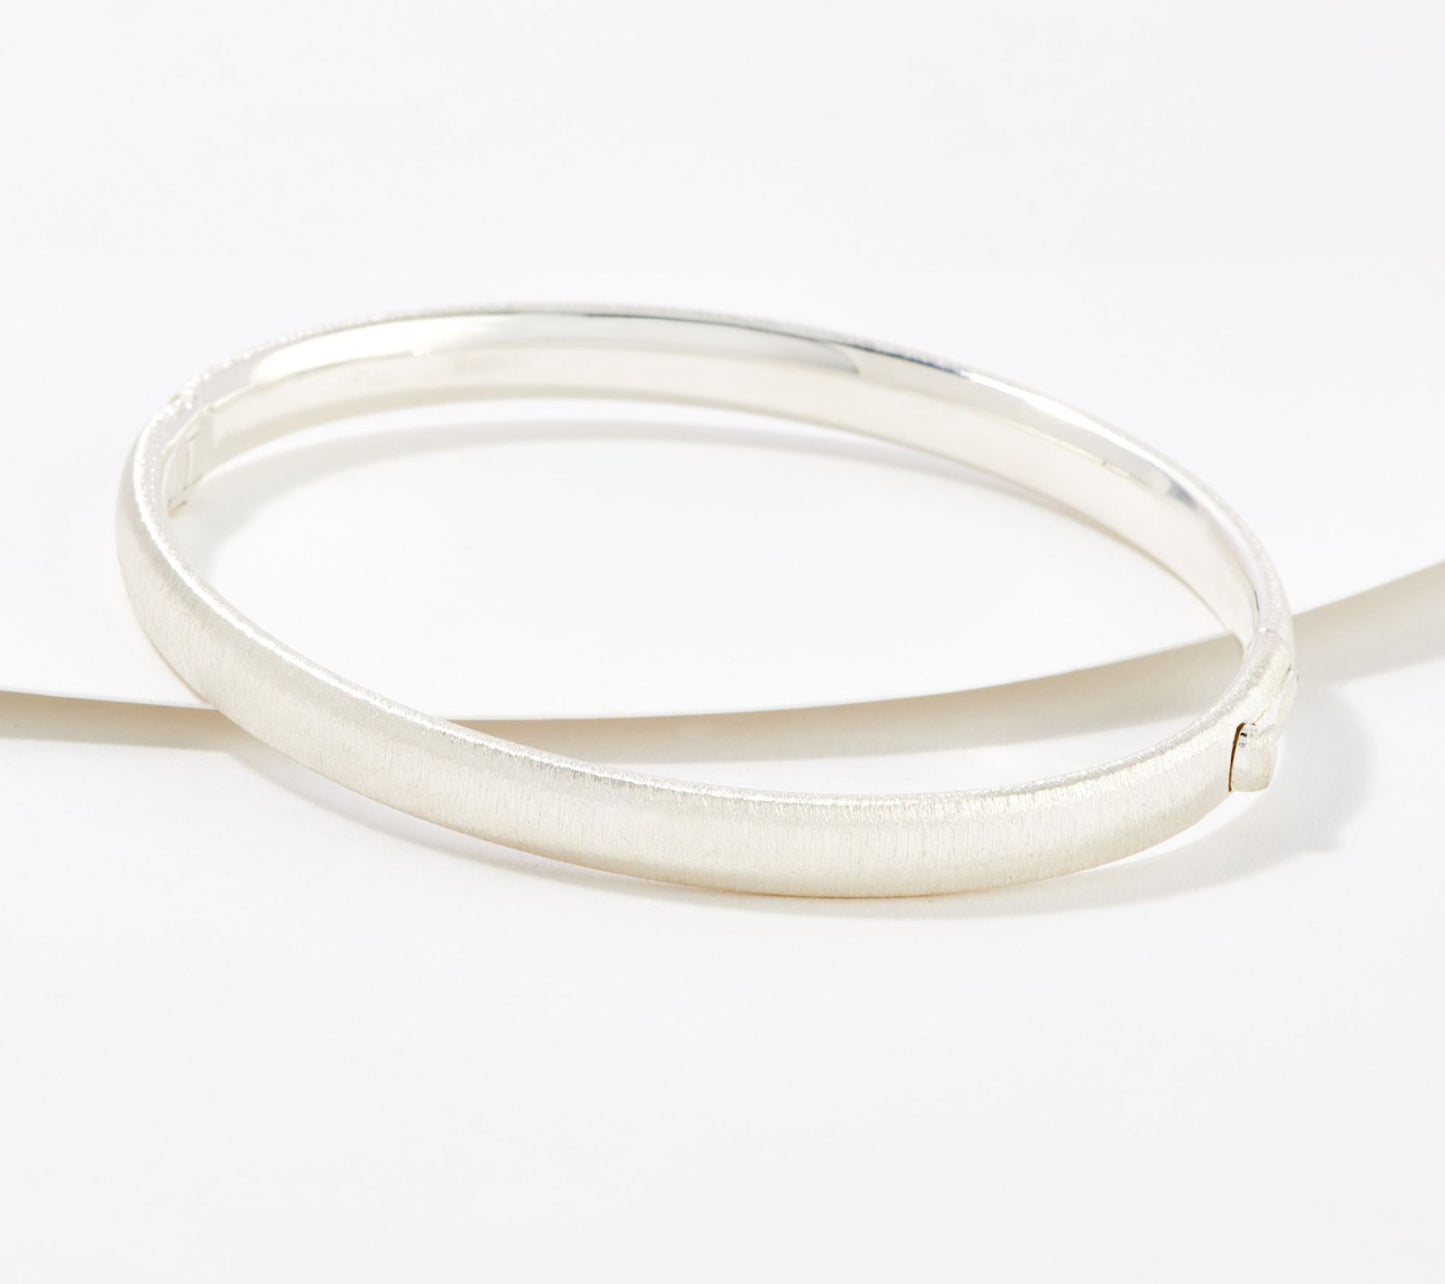 UltraFine 950 Silver Oval Tube Satin Bangle Bracelet Size 6-3/4"